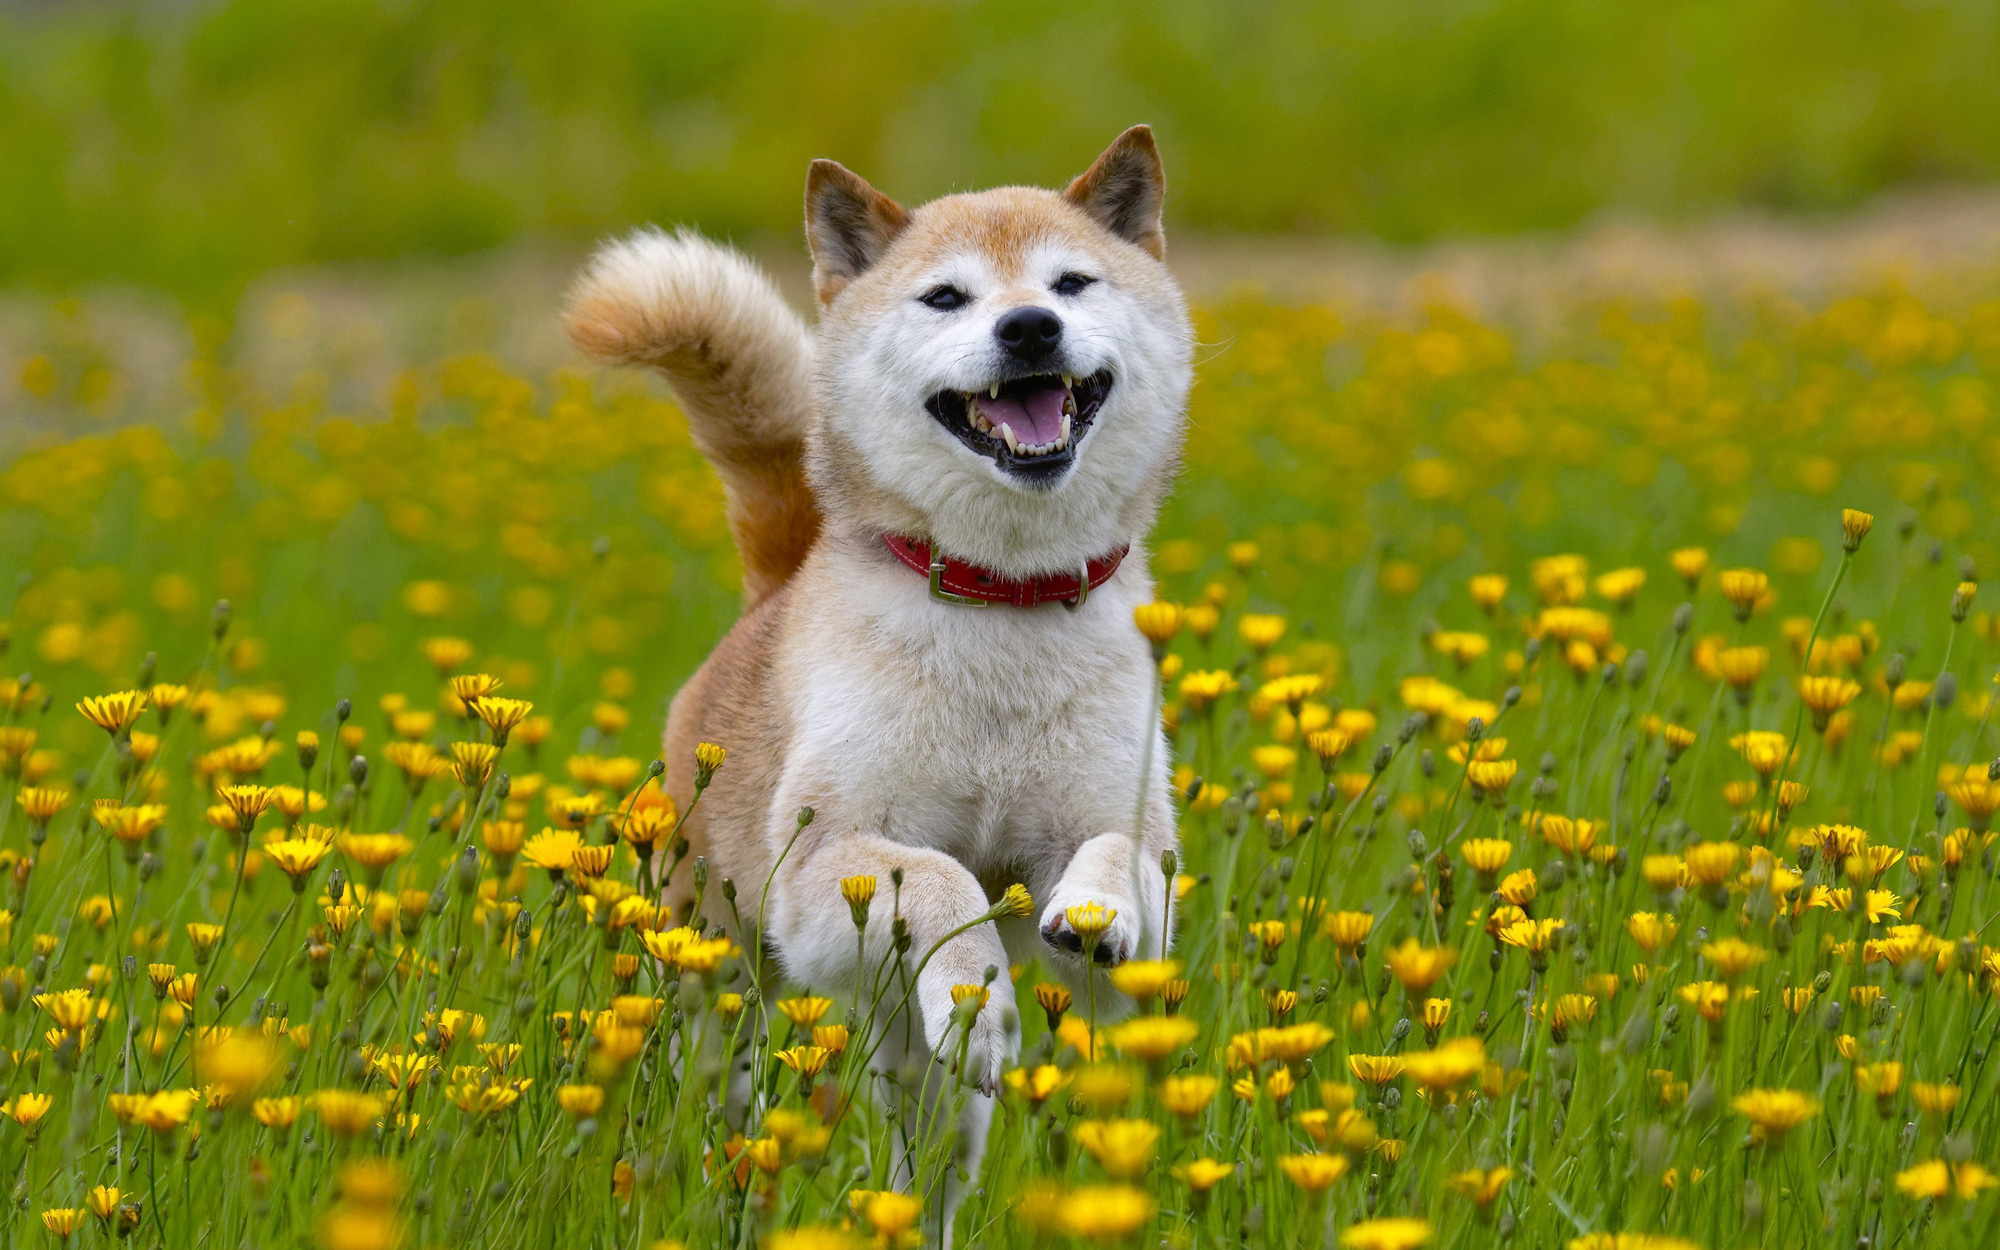 Tan chảy trước hình ảnh dễ thương của chú chó Shiba yêu hoa cỏ | Động vật,  Shiba inu, Akita